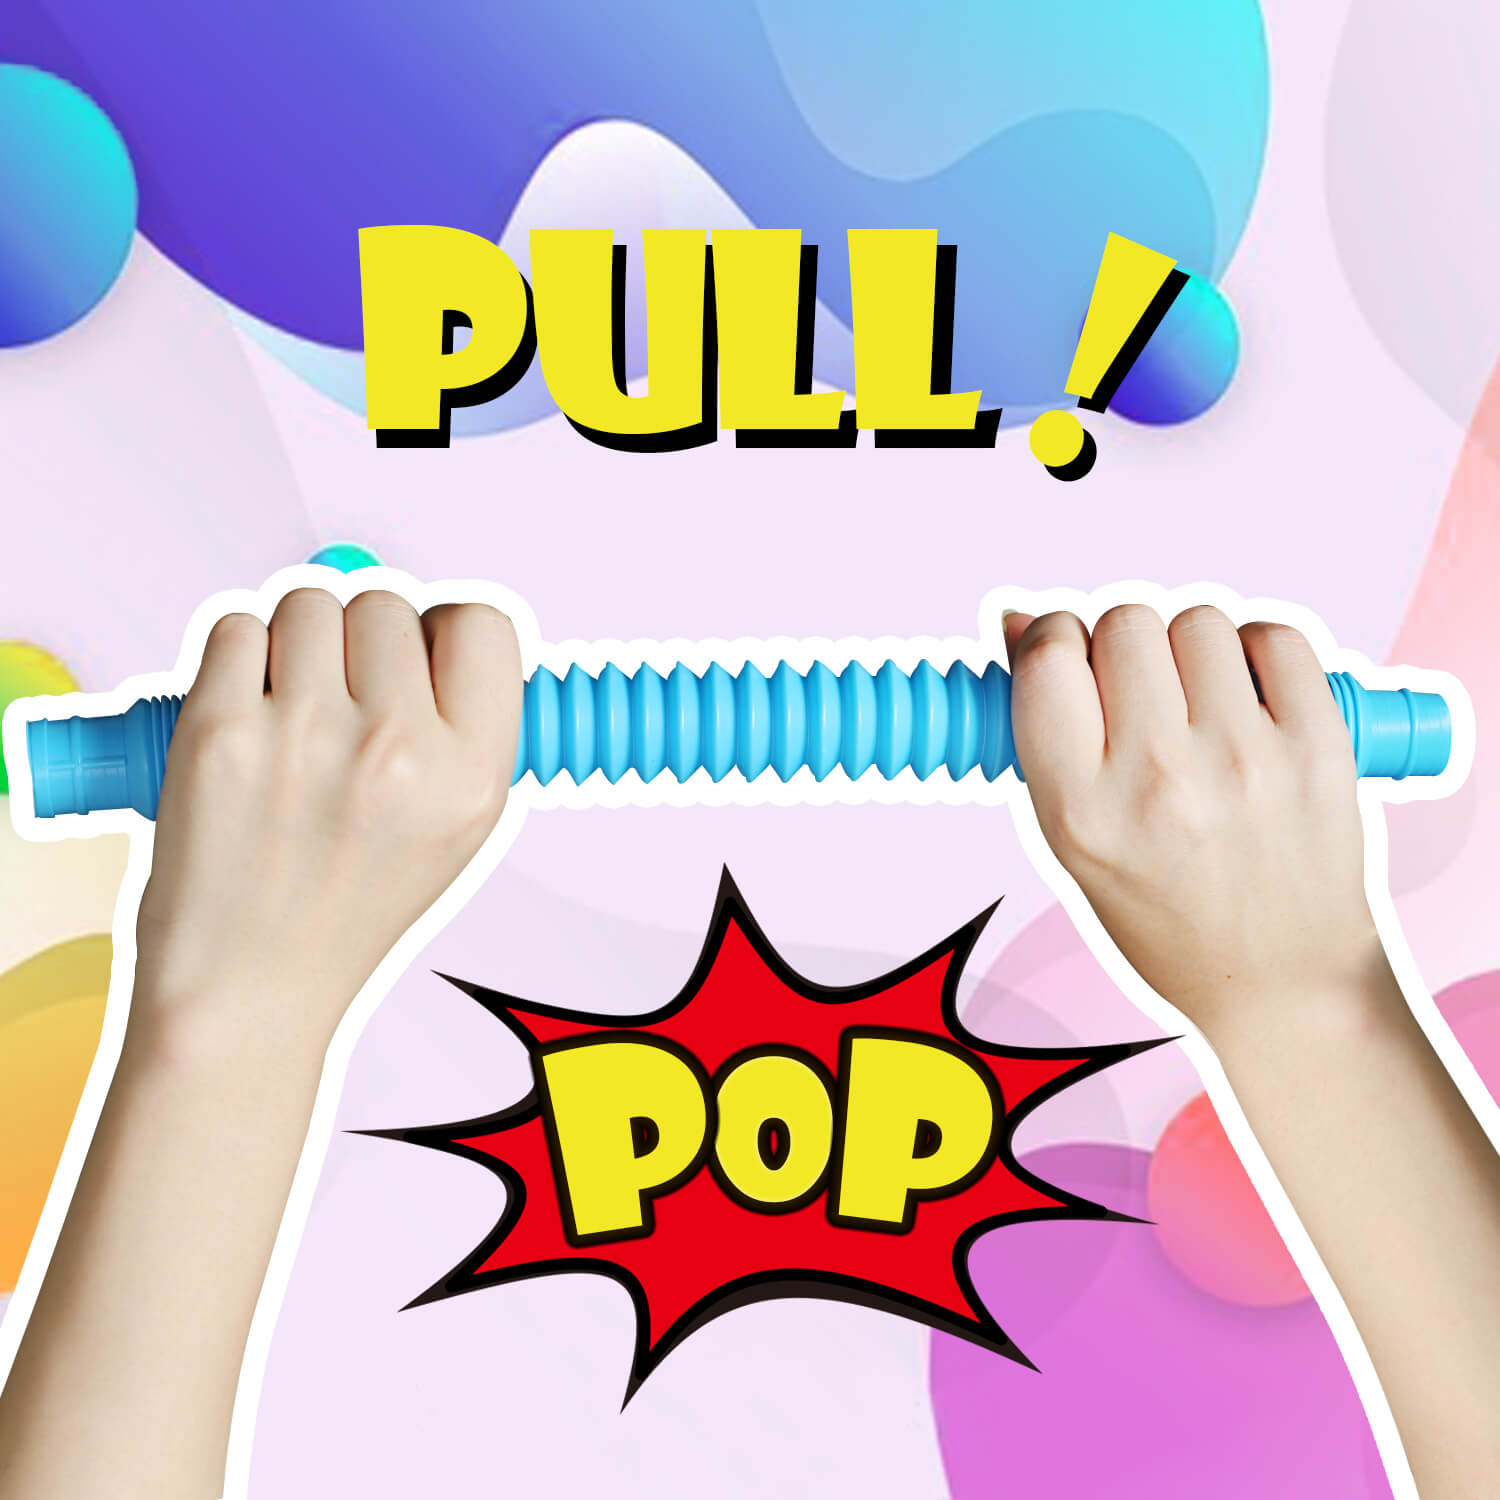 JA-RU Pull Pop Tubes Sensory Fidget Toys Pop Play Tubes Sensory Toys